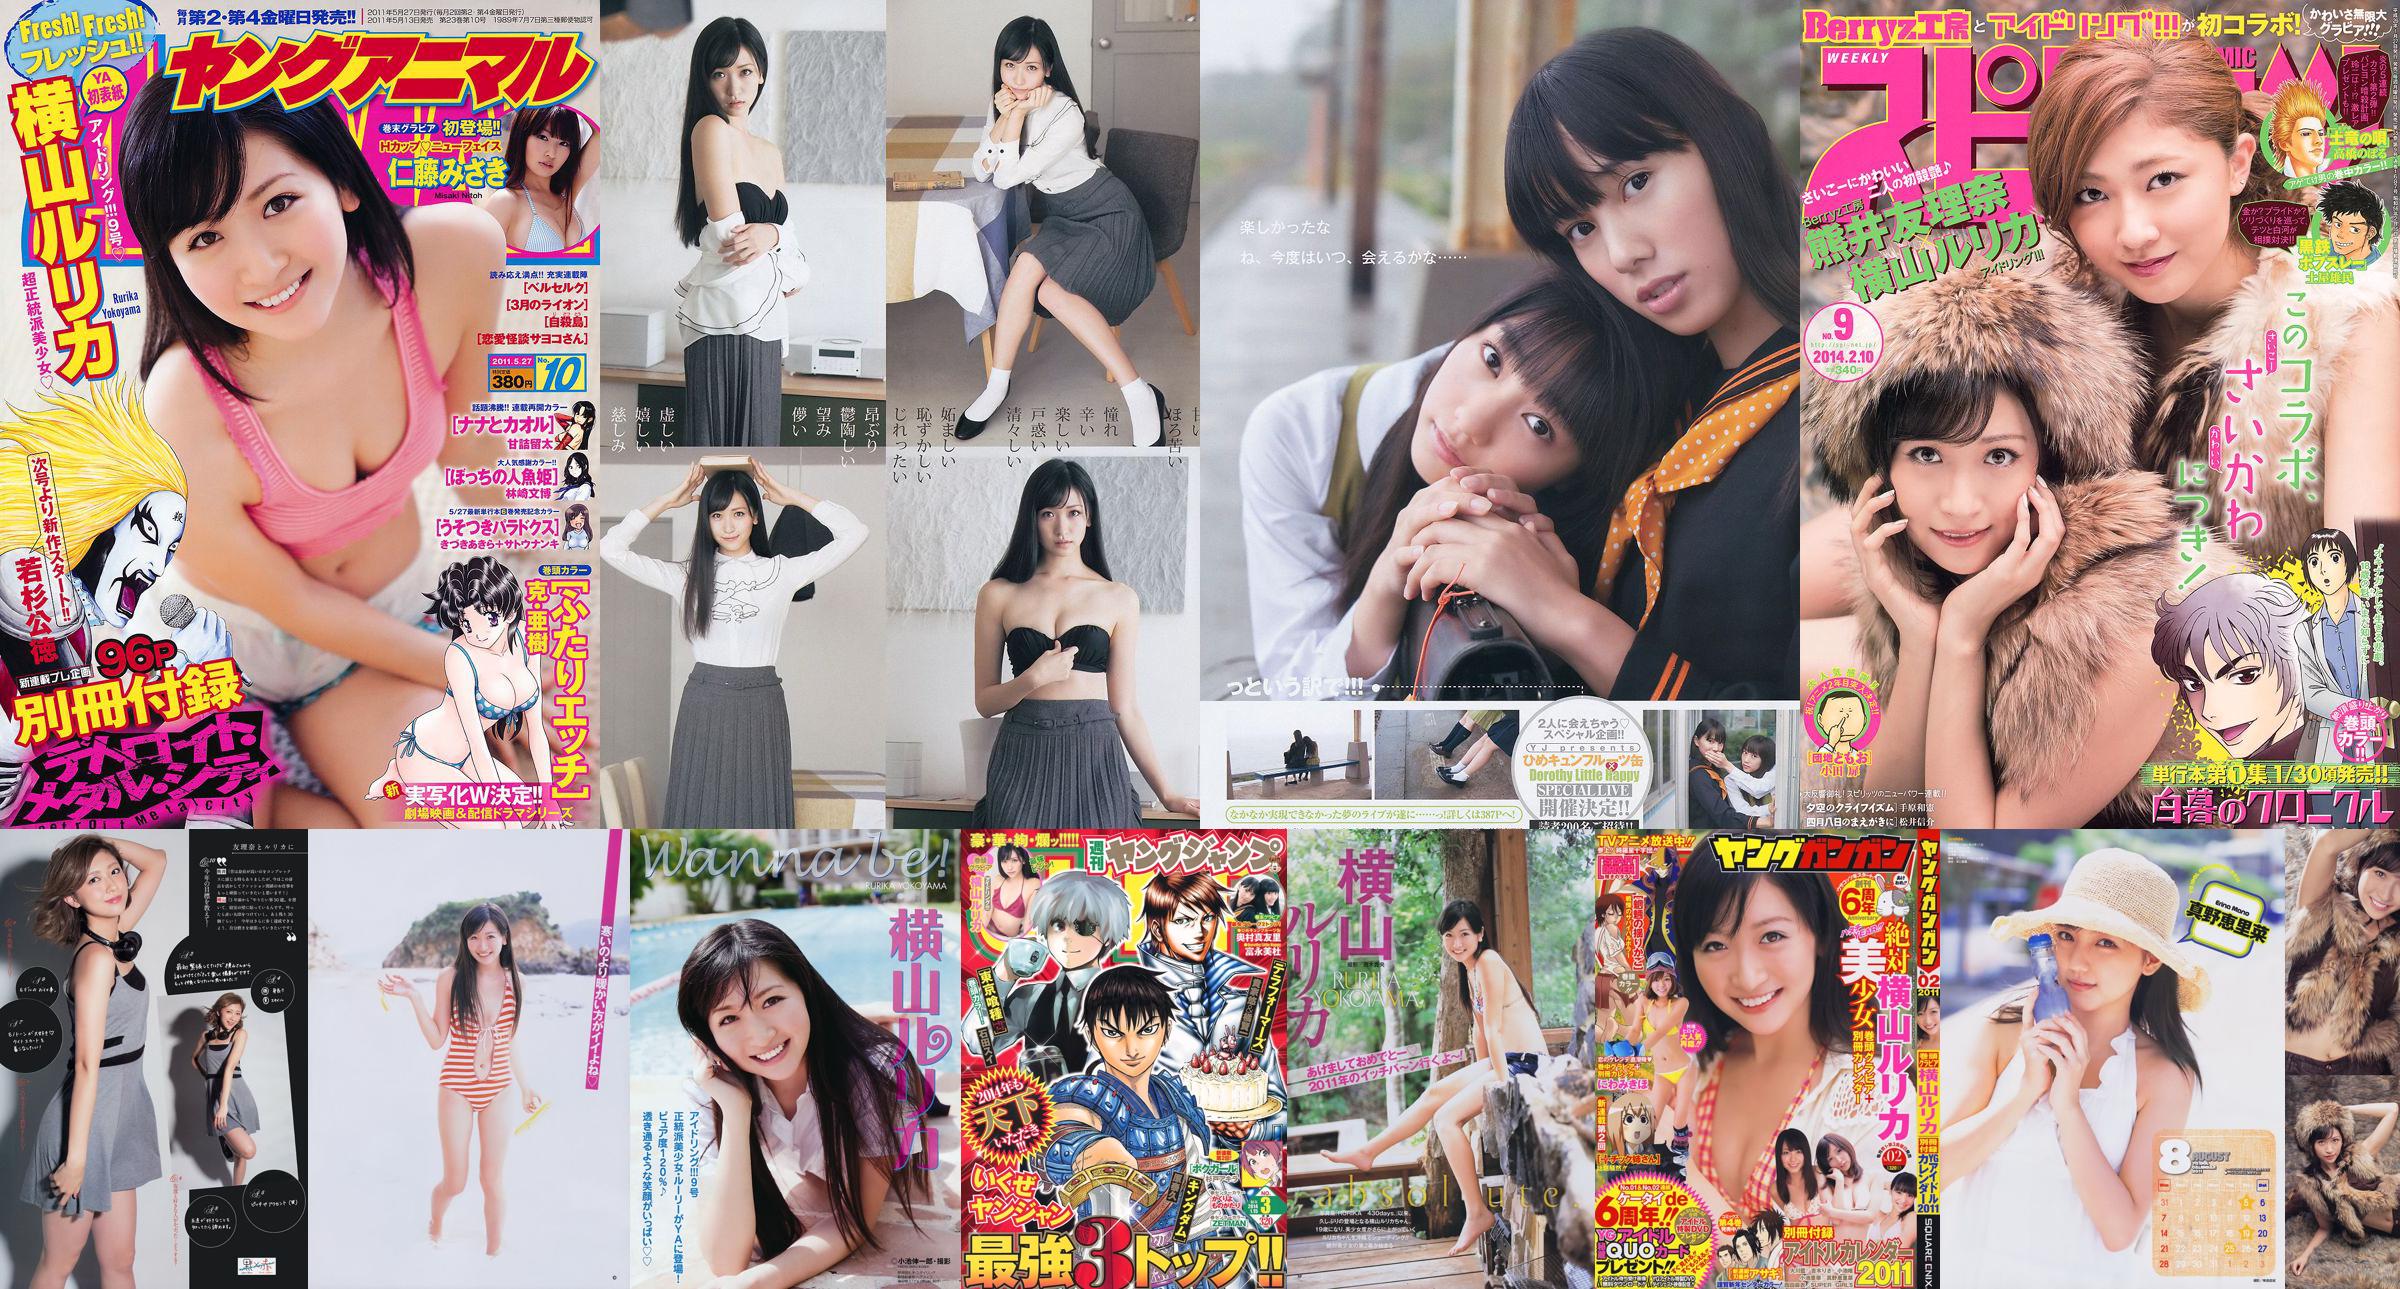 [Young Gangan] Rurika Yokoyama 2011 No.02 Photo Magazine No.431be4 หน้า 2